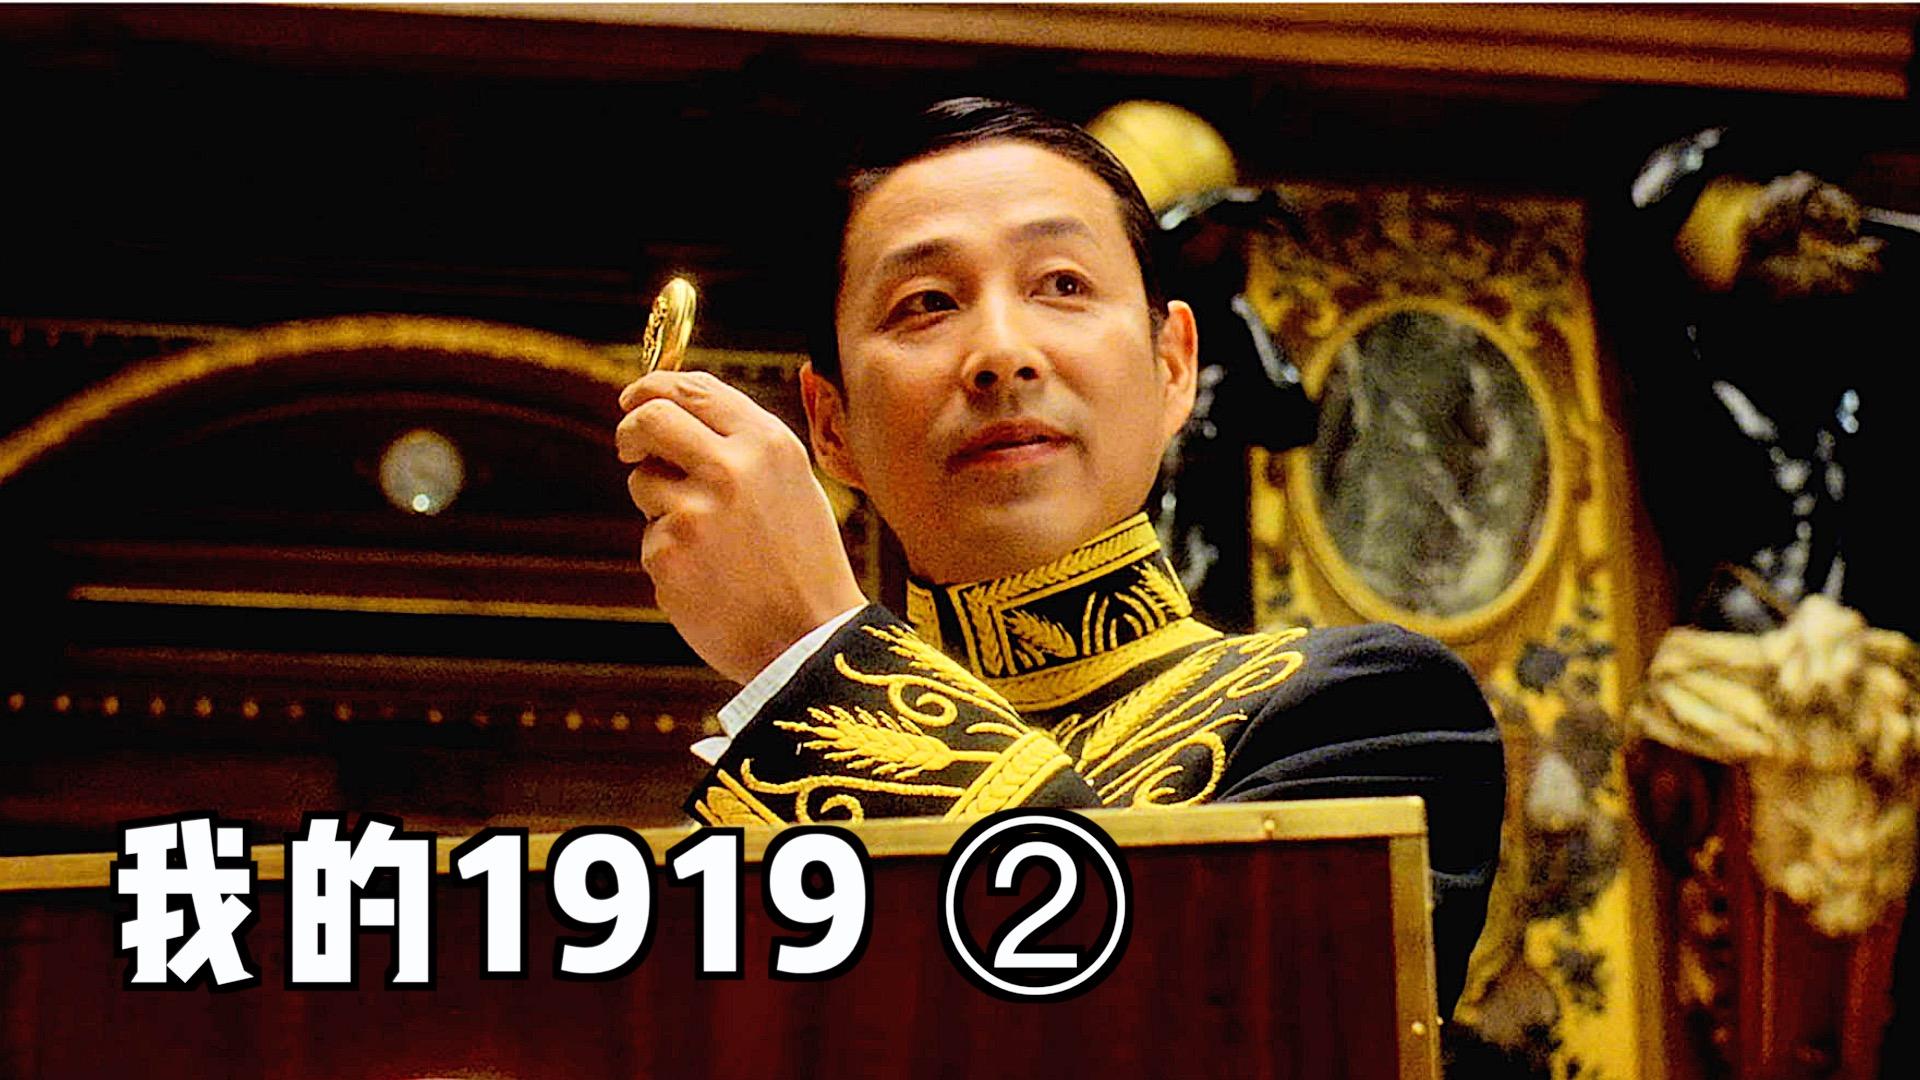 中国第一个外交官,「顾维钧」在巴黎和会上为我们据理力争!2 